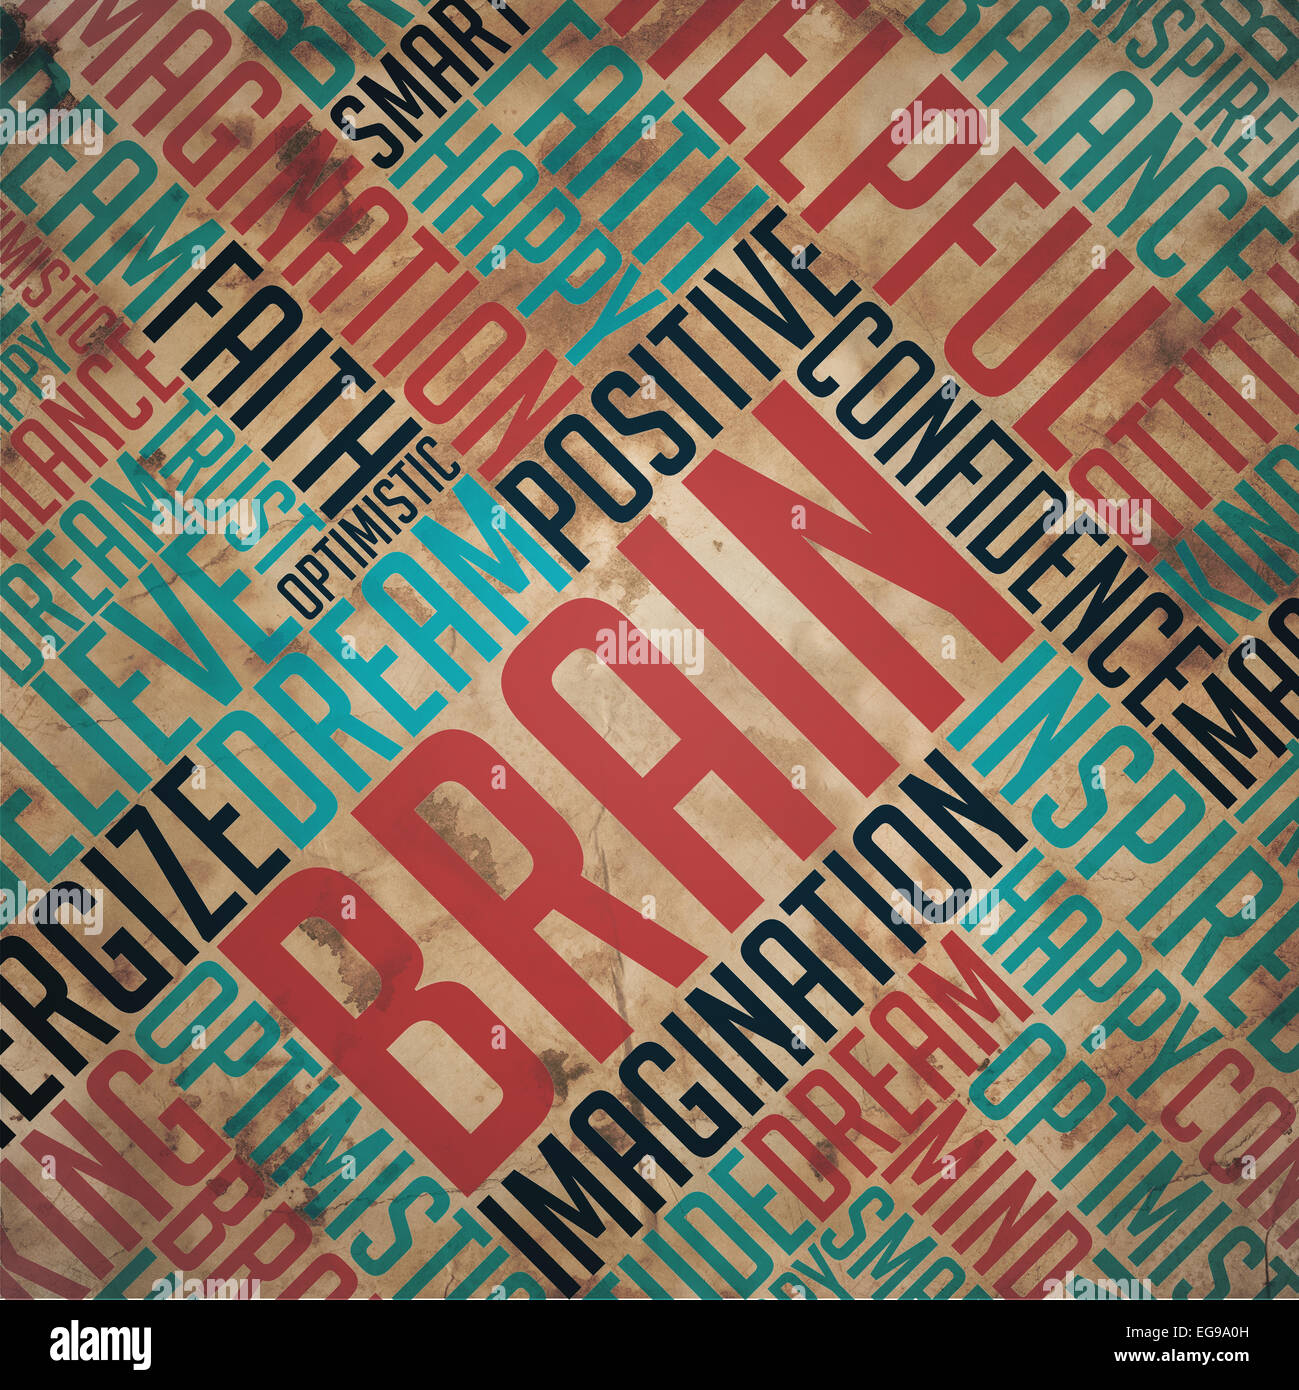 Cerveau - Grunge Imprimé Collage sur Vieux papier fauve. Banque D'Images